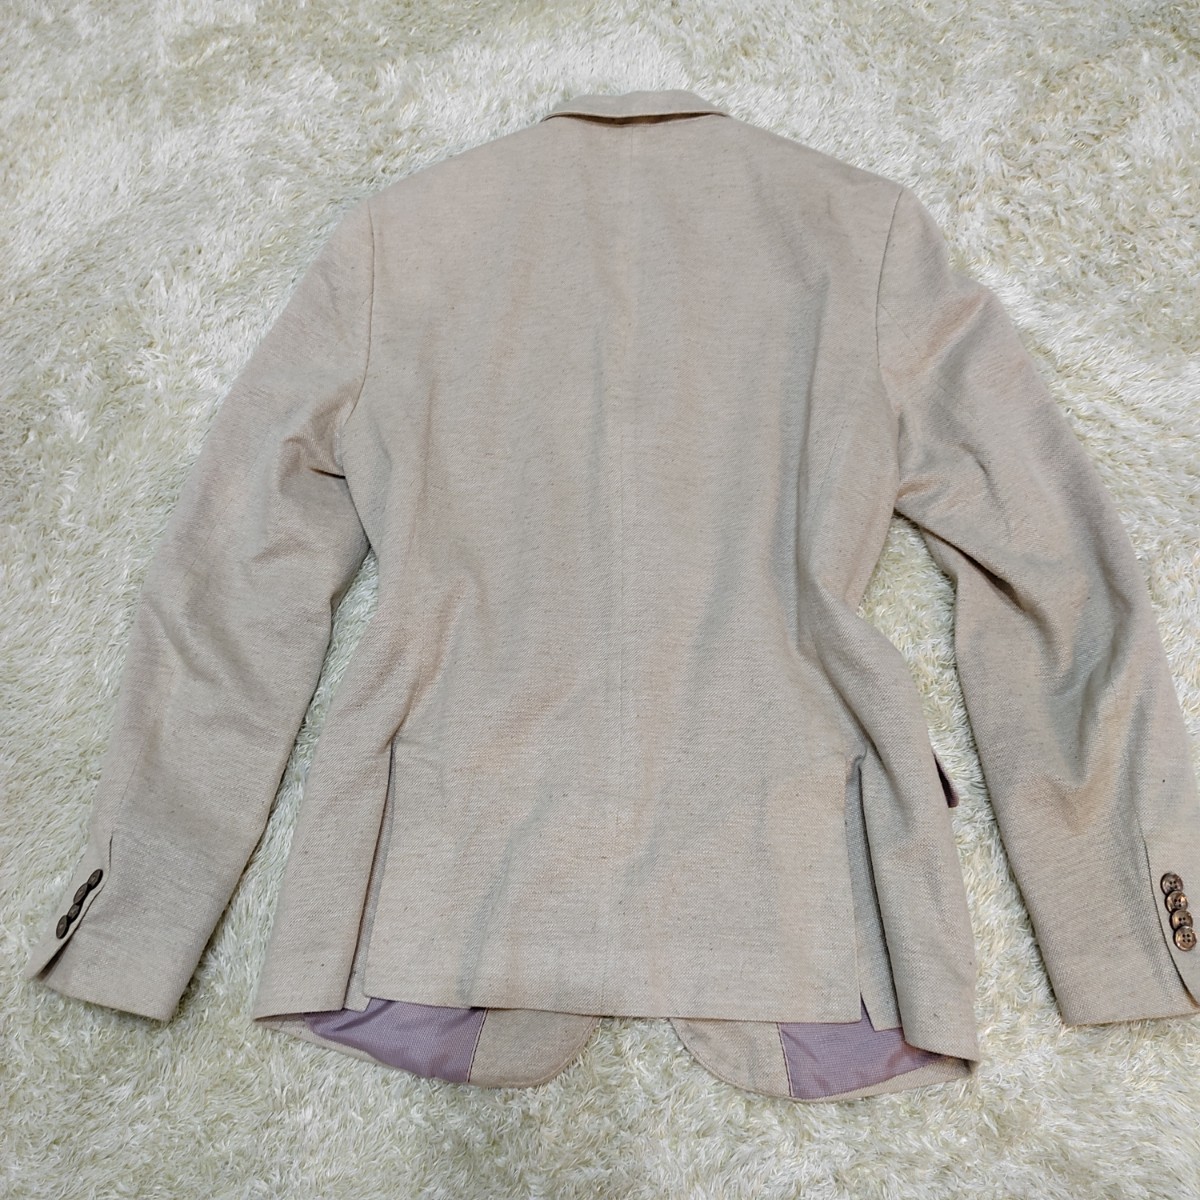 ザラマン【色気漂う上品さ】ZARA MAN テーラードジャケット 2B 麻 リネン 夏は涼しく、冬は暖かい 年中対応 白 ホワイト 内側ピンク M _画像8